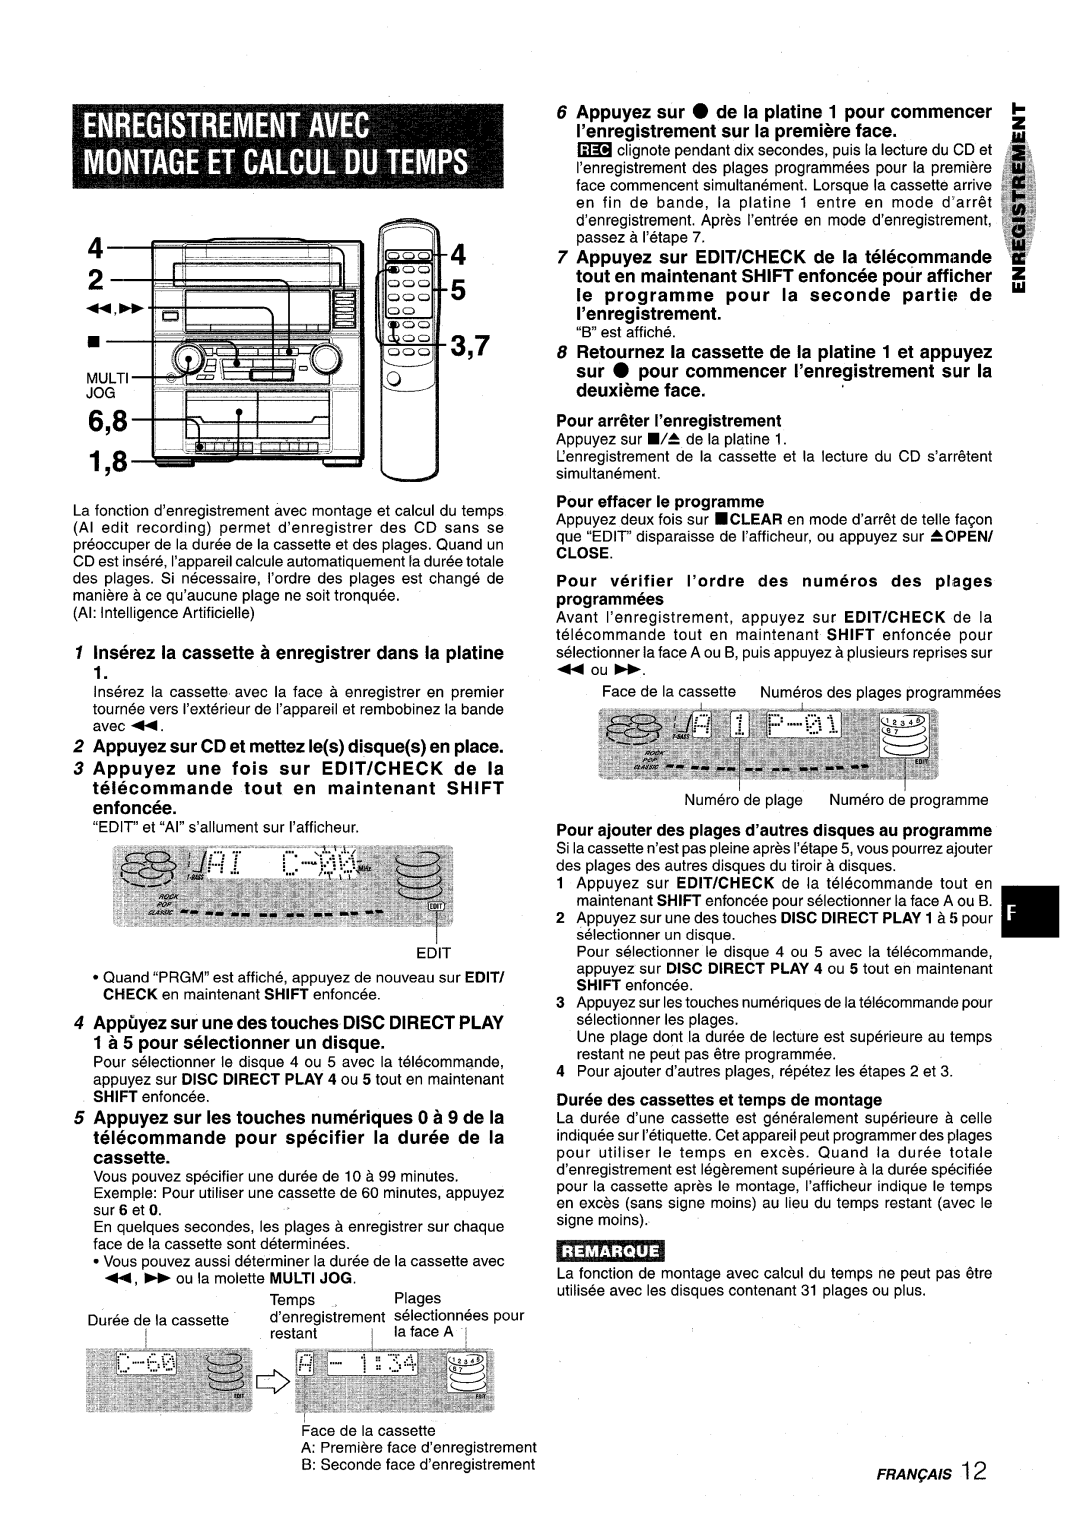 Aiwa XR-M75 manual 1 lns6rez la cassette a enregistrer clans la platine, Appuyez une fois sur EDIT/CHECK de la 